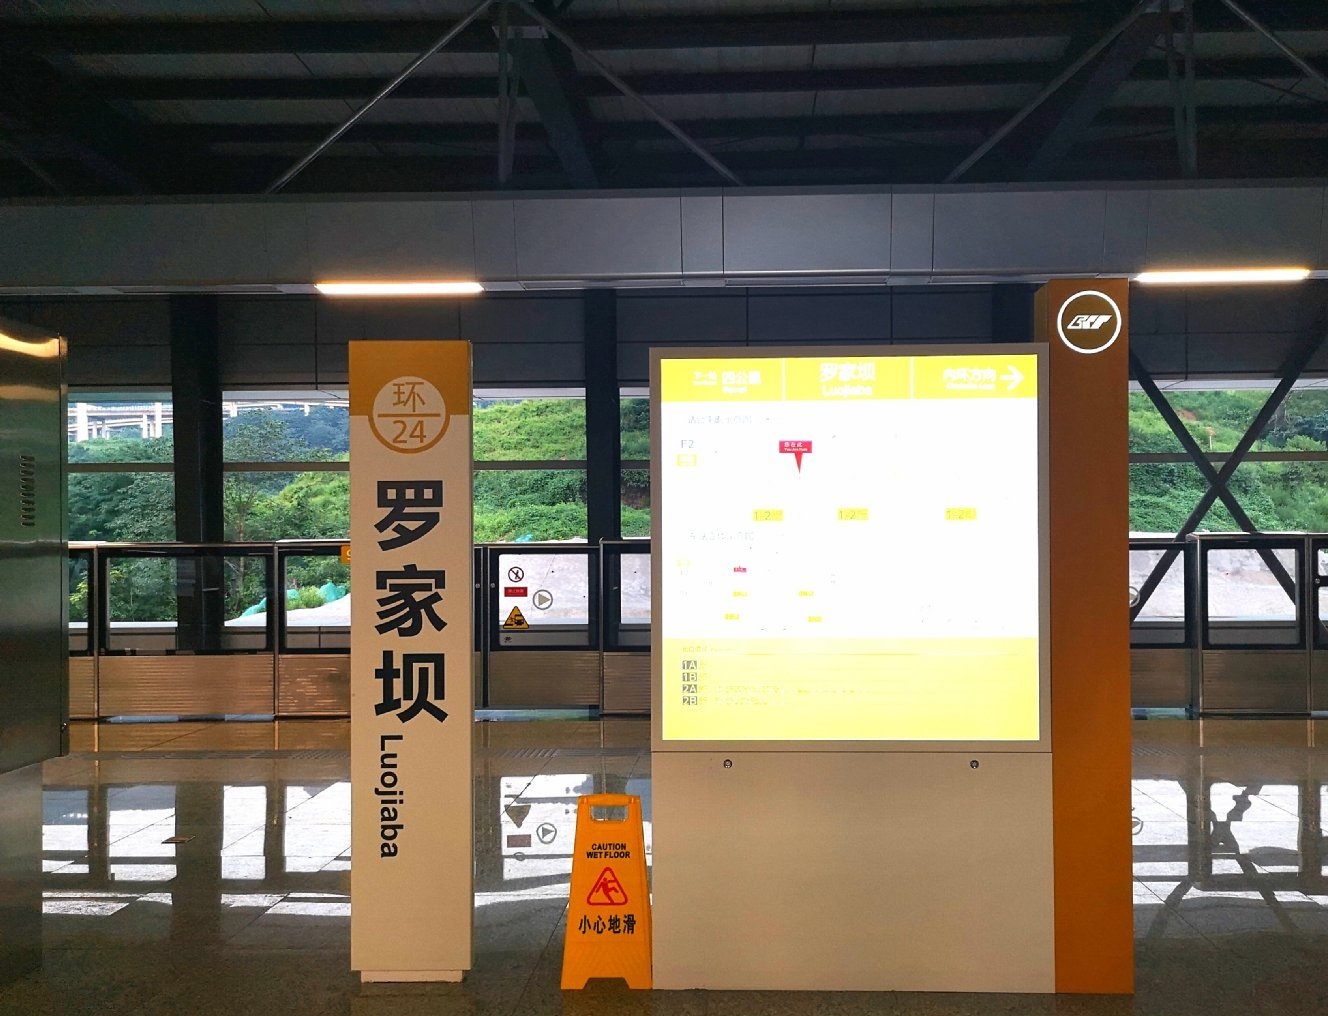 评重庆轨道交通环线罗家坝站的低调开通:乘客很少,未来或有重用